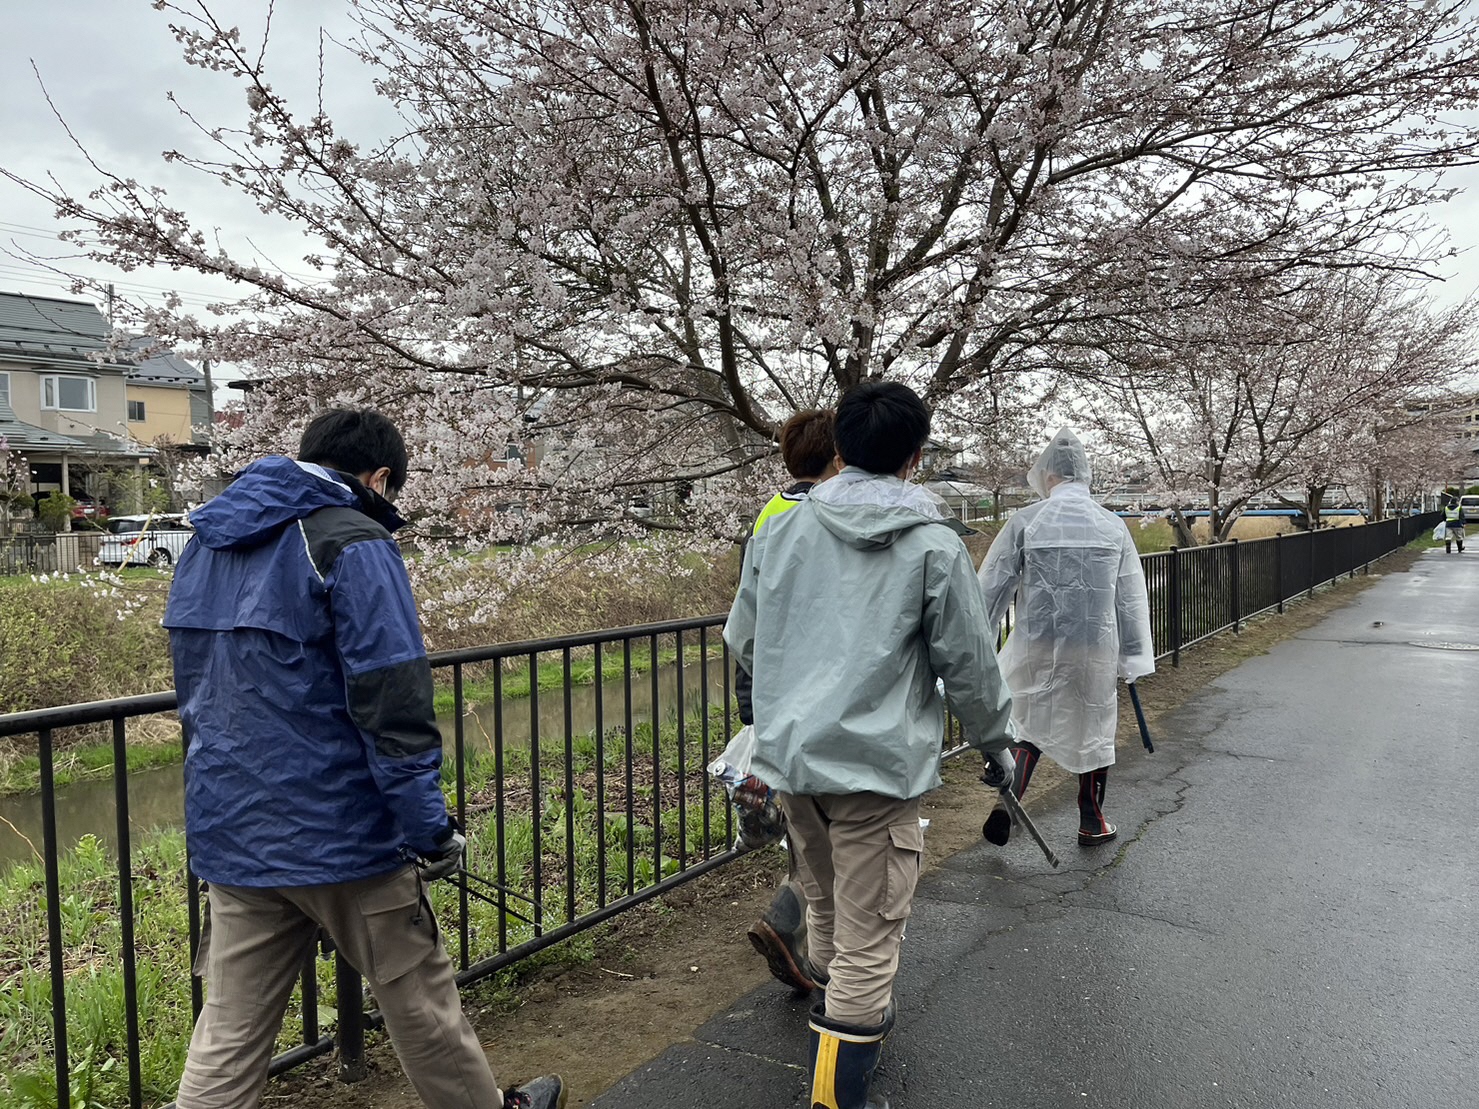 桜の花の咲く公園脇道路をごみを探して歩く人たちの写真